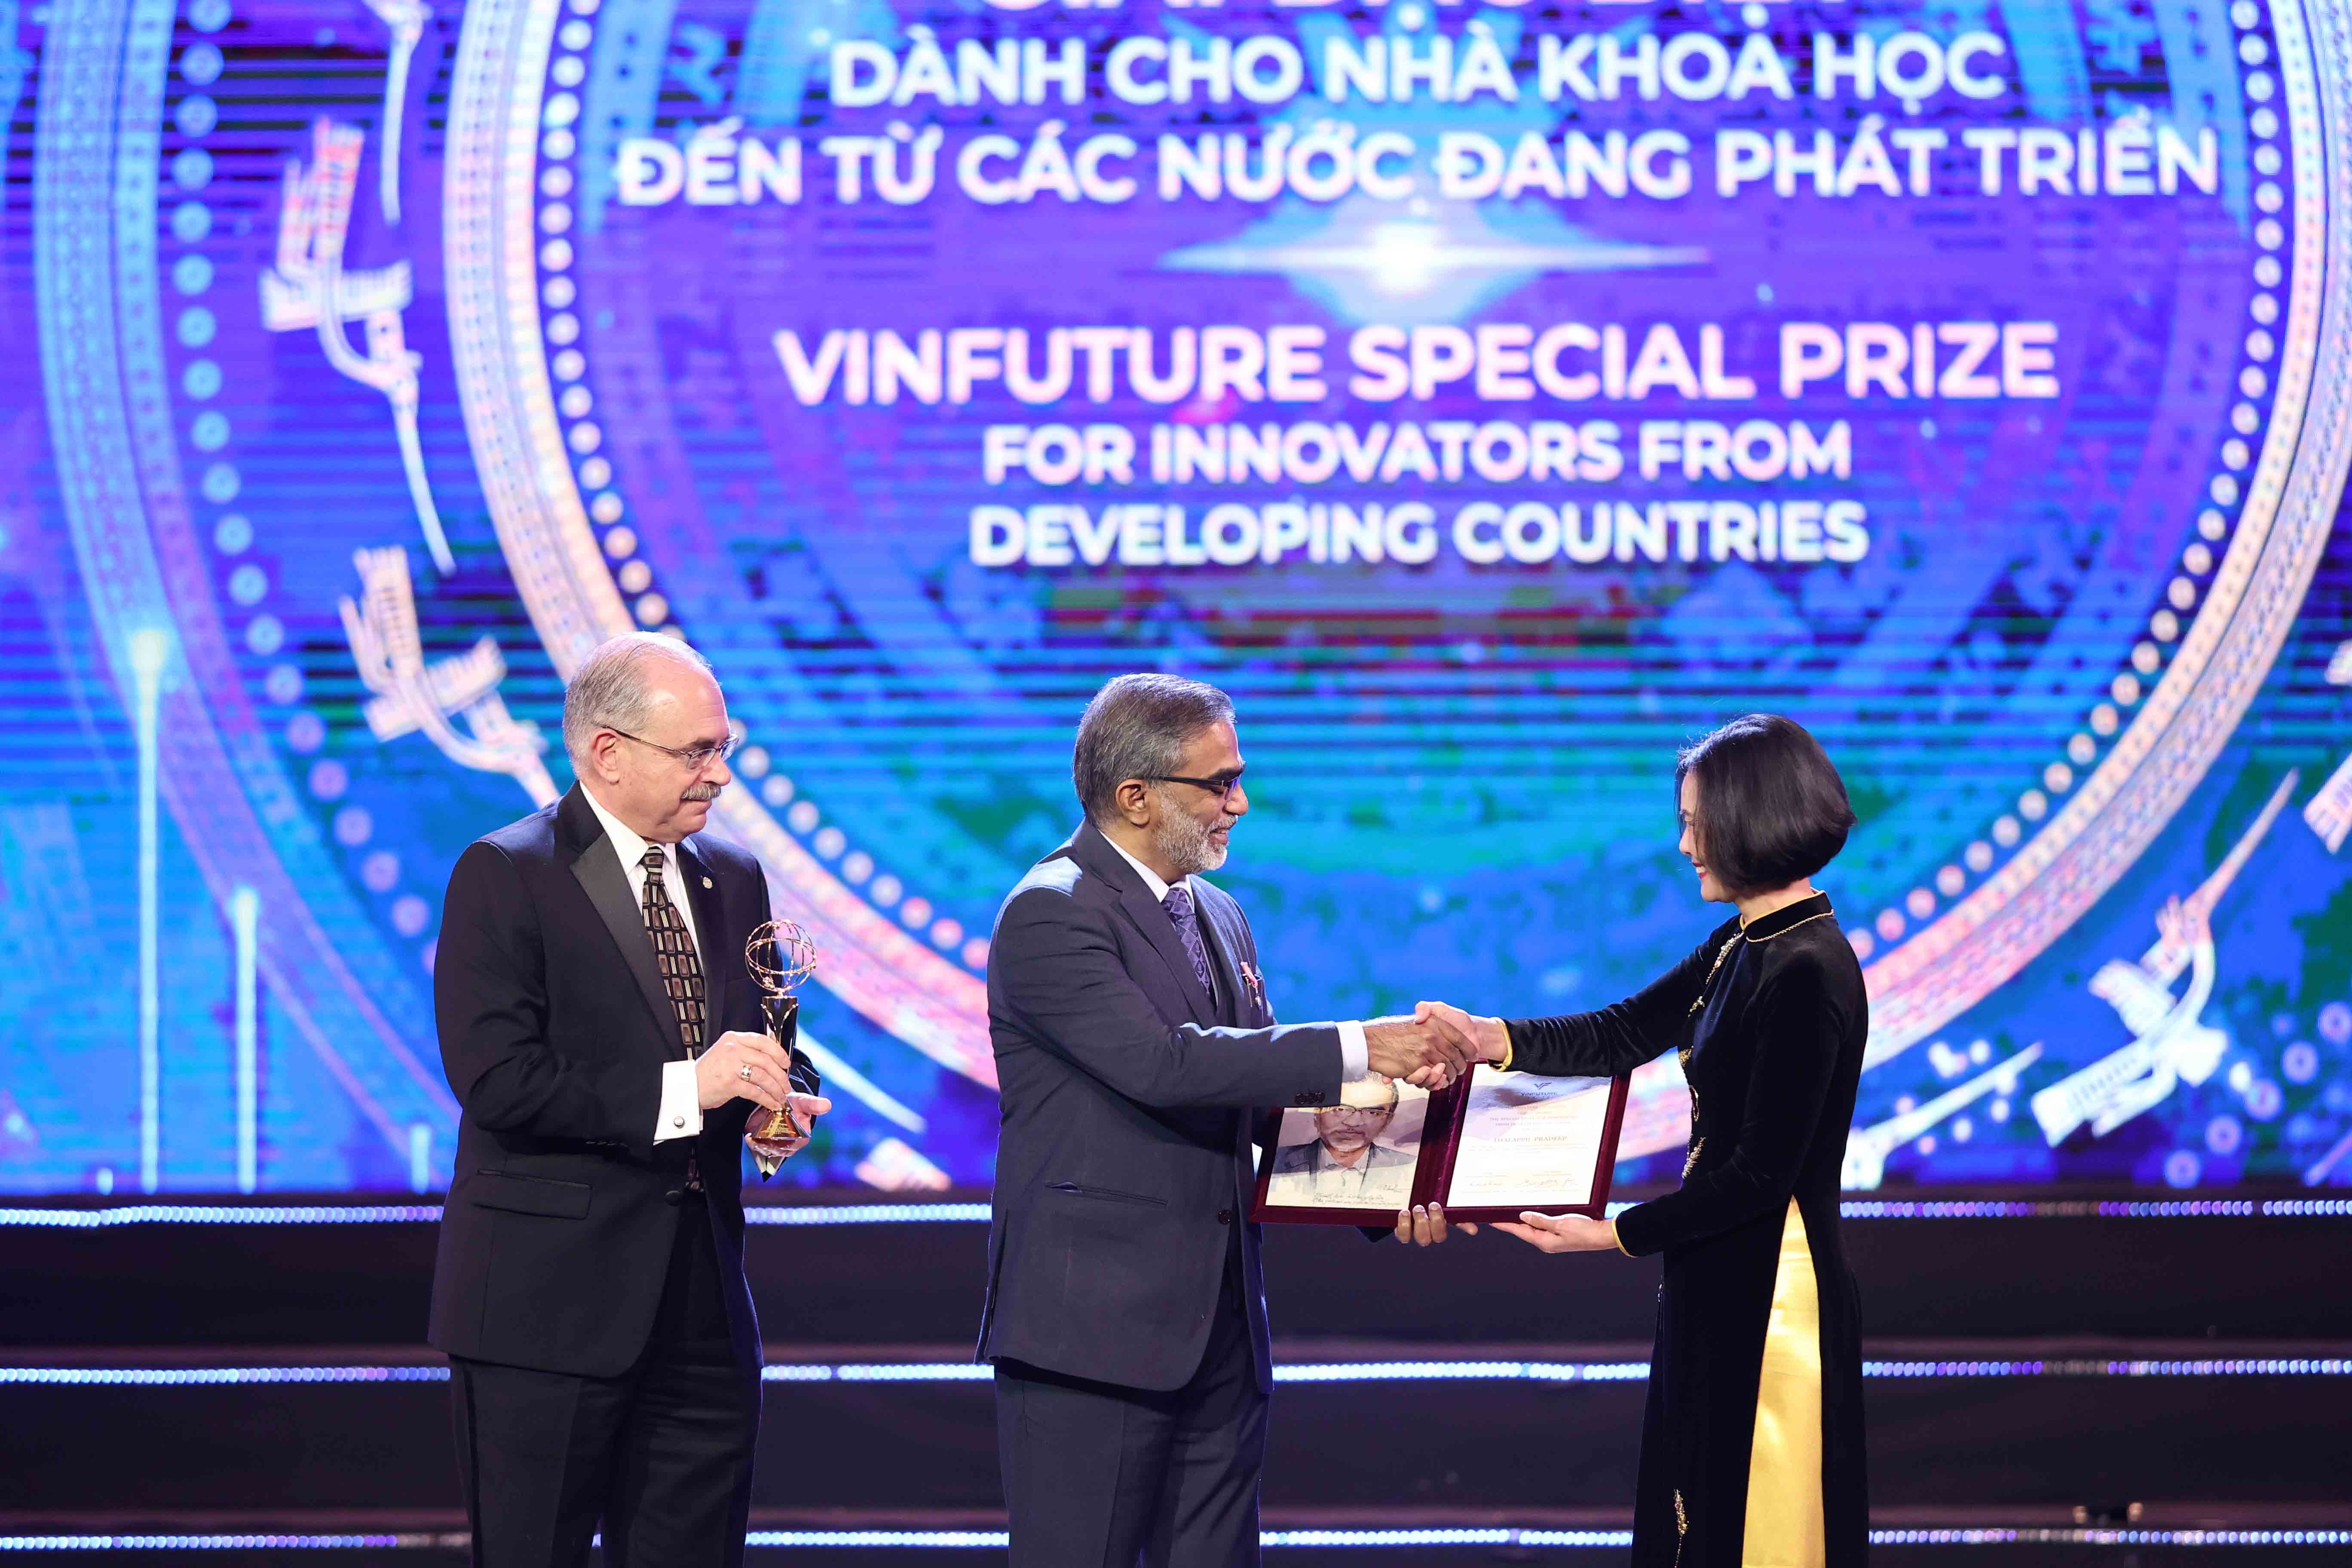 Phát minh của GS. Pradeep đã vượt qua gần 1.000 đề cử đến từ 71 quốc gia để được trao Giải Đặc biệt tại VinFuture 2022 (LINK ) - Ảnh: Quỹ VinFuture.